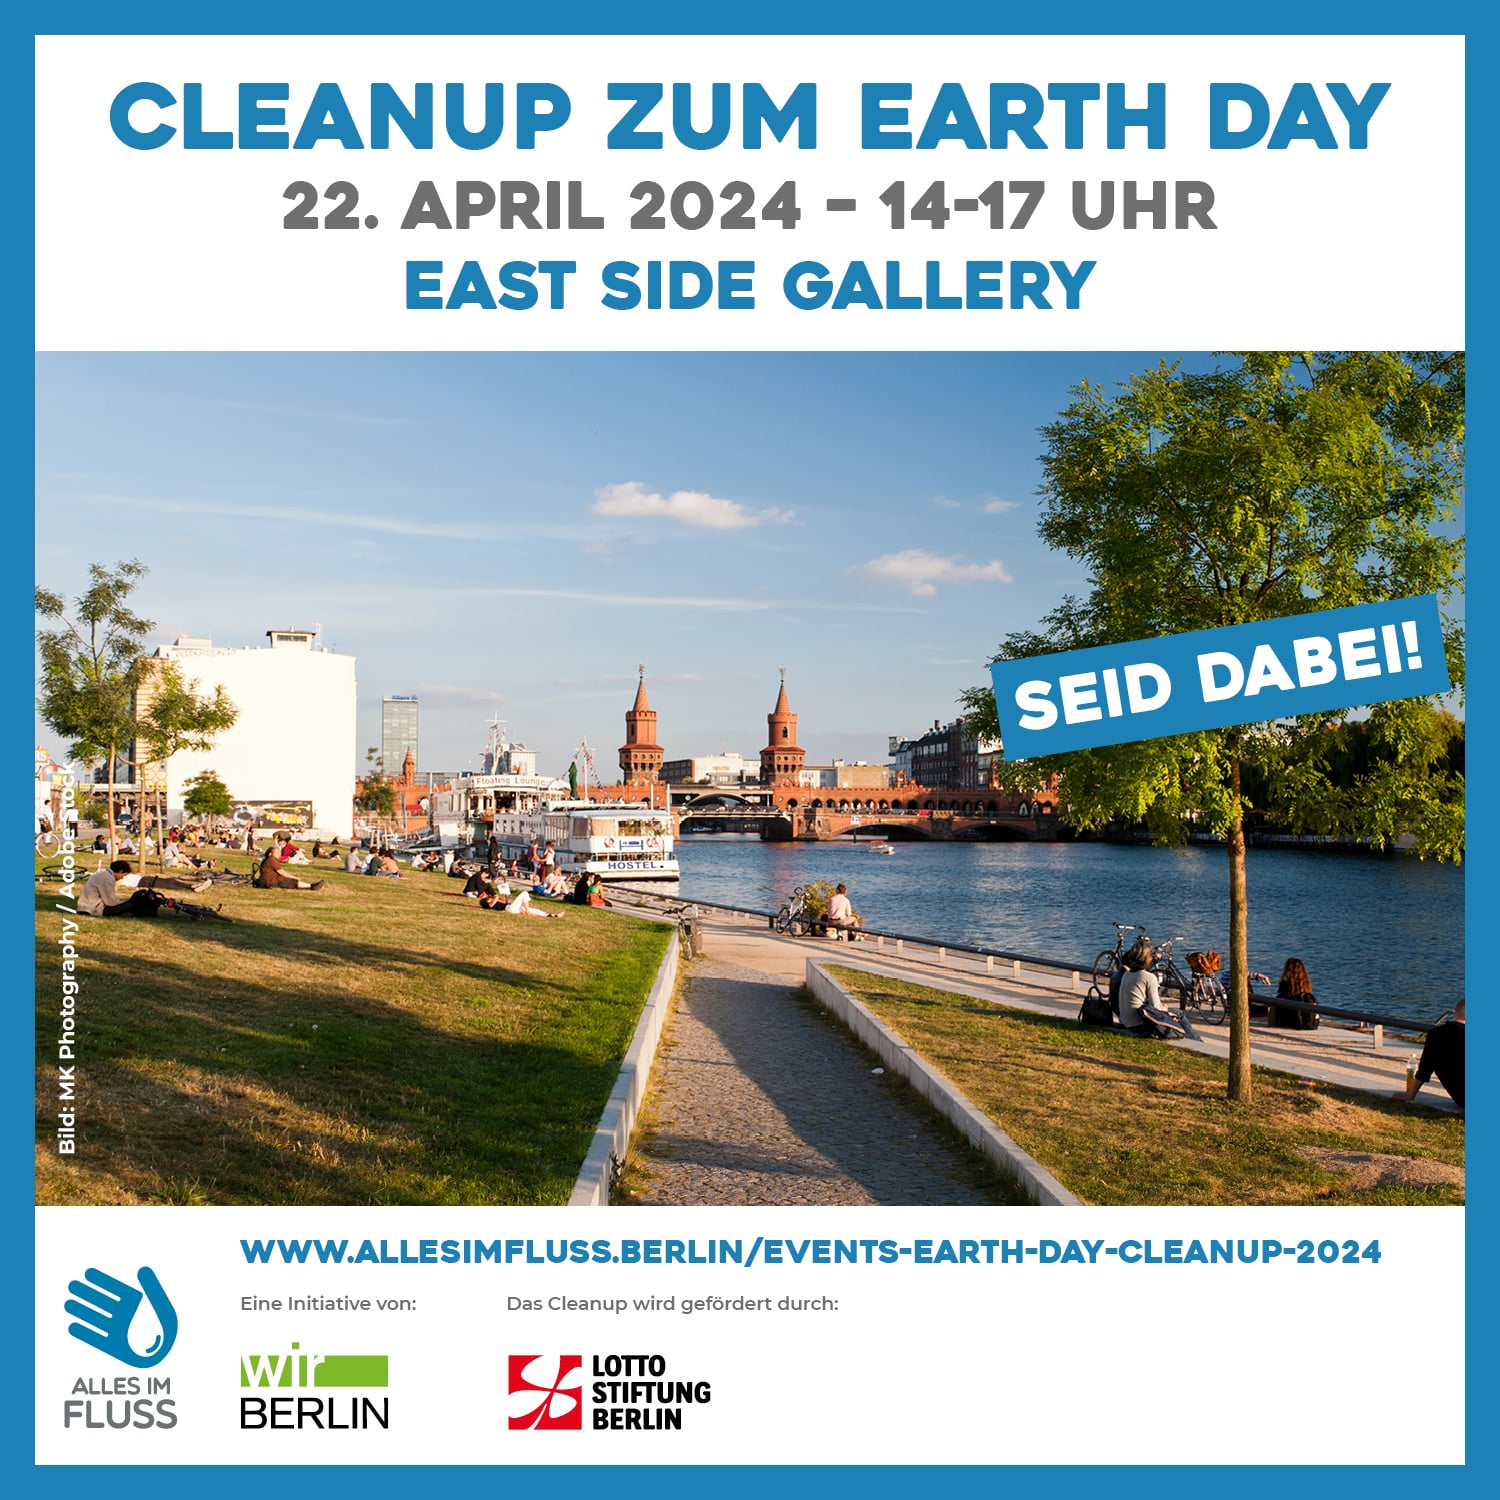 Cleanup zum Earth Day am 22. April von 14 bis 17 Uhr an der East Side Gallery